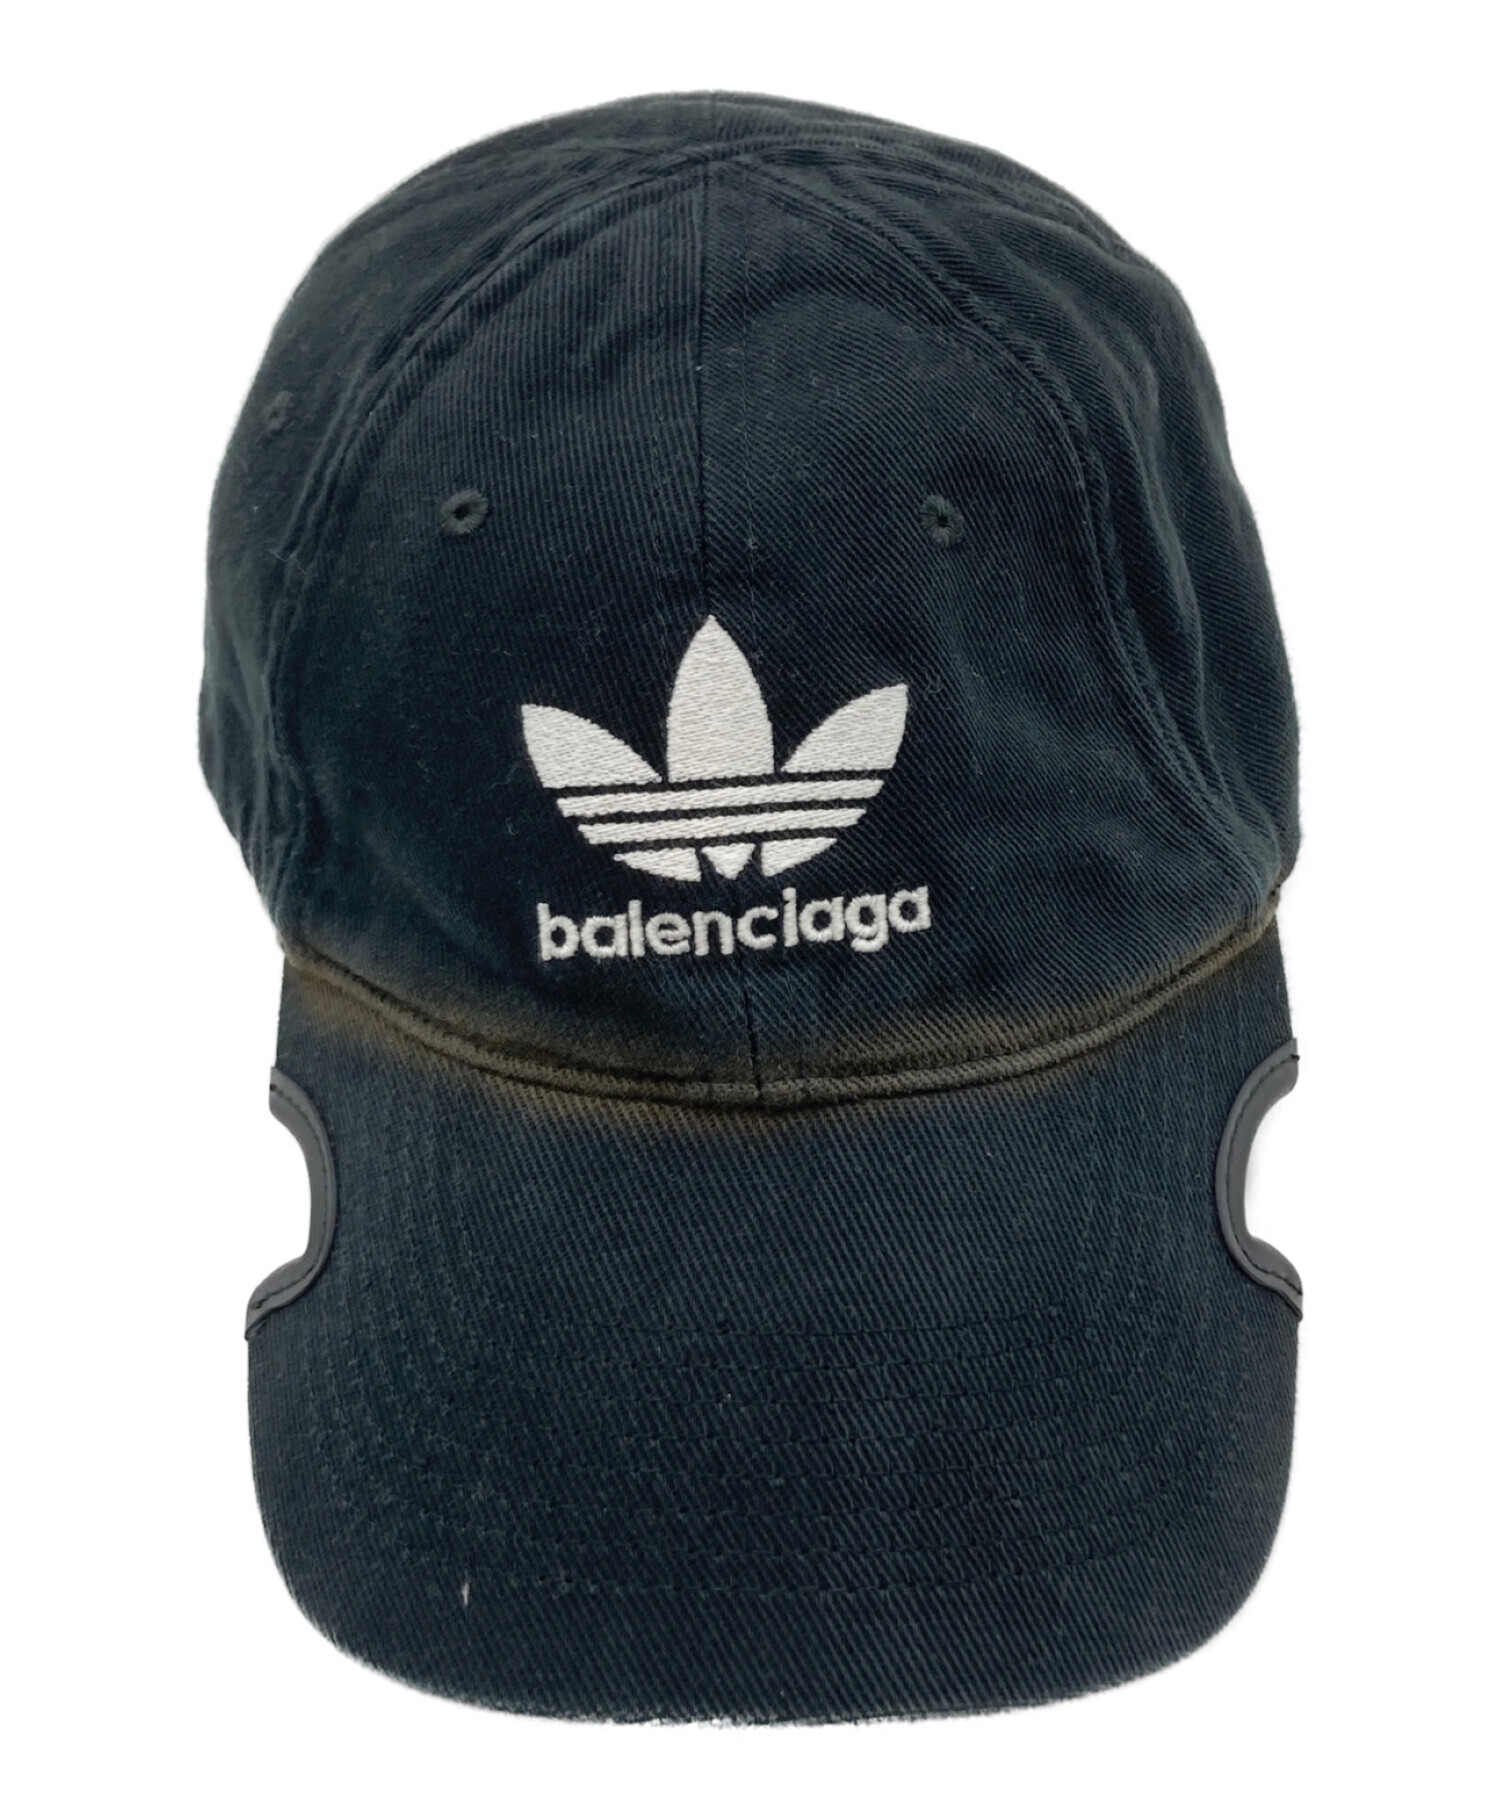 BALENCIAGA adidasコラボ ニット帽ご希望に添えれずすみません泣